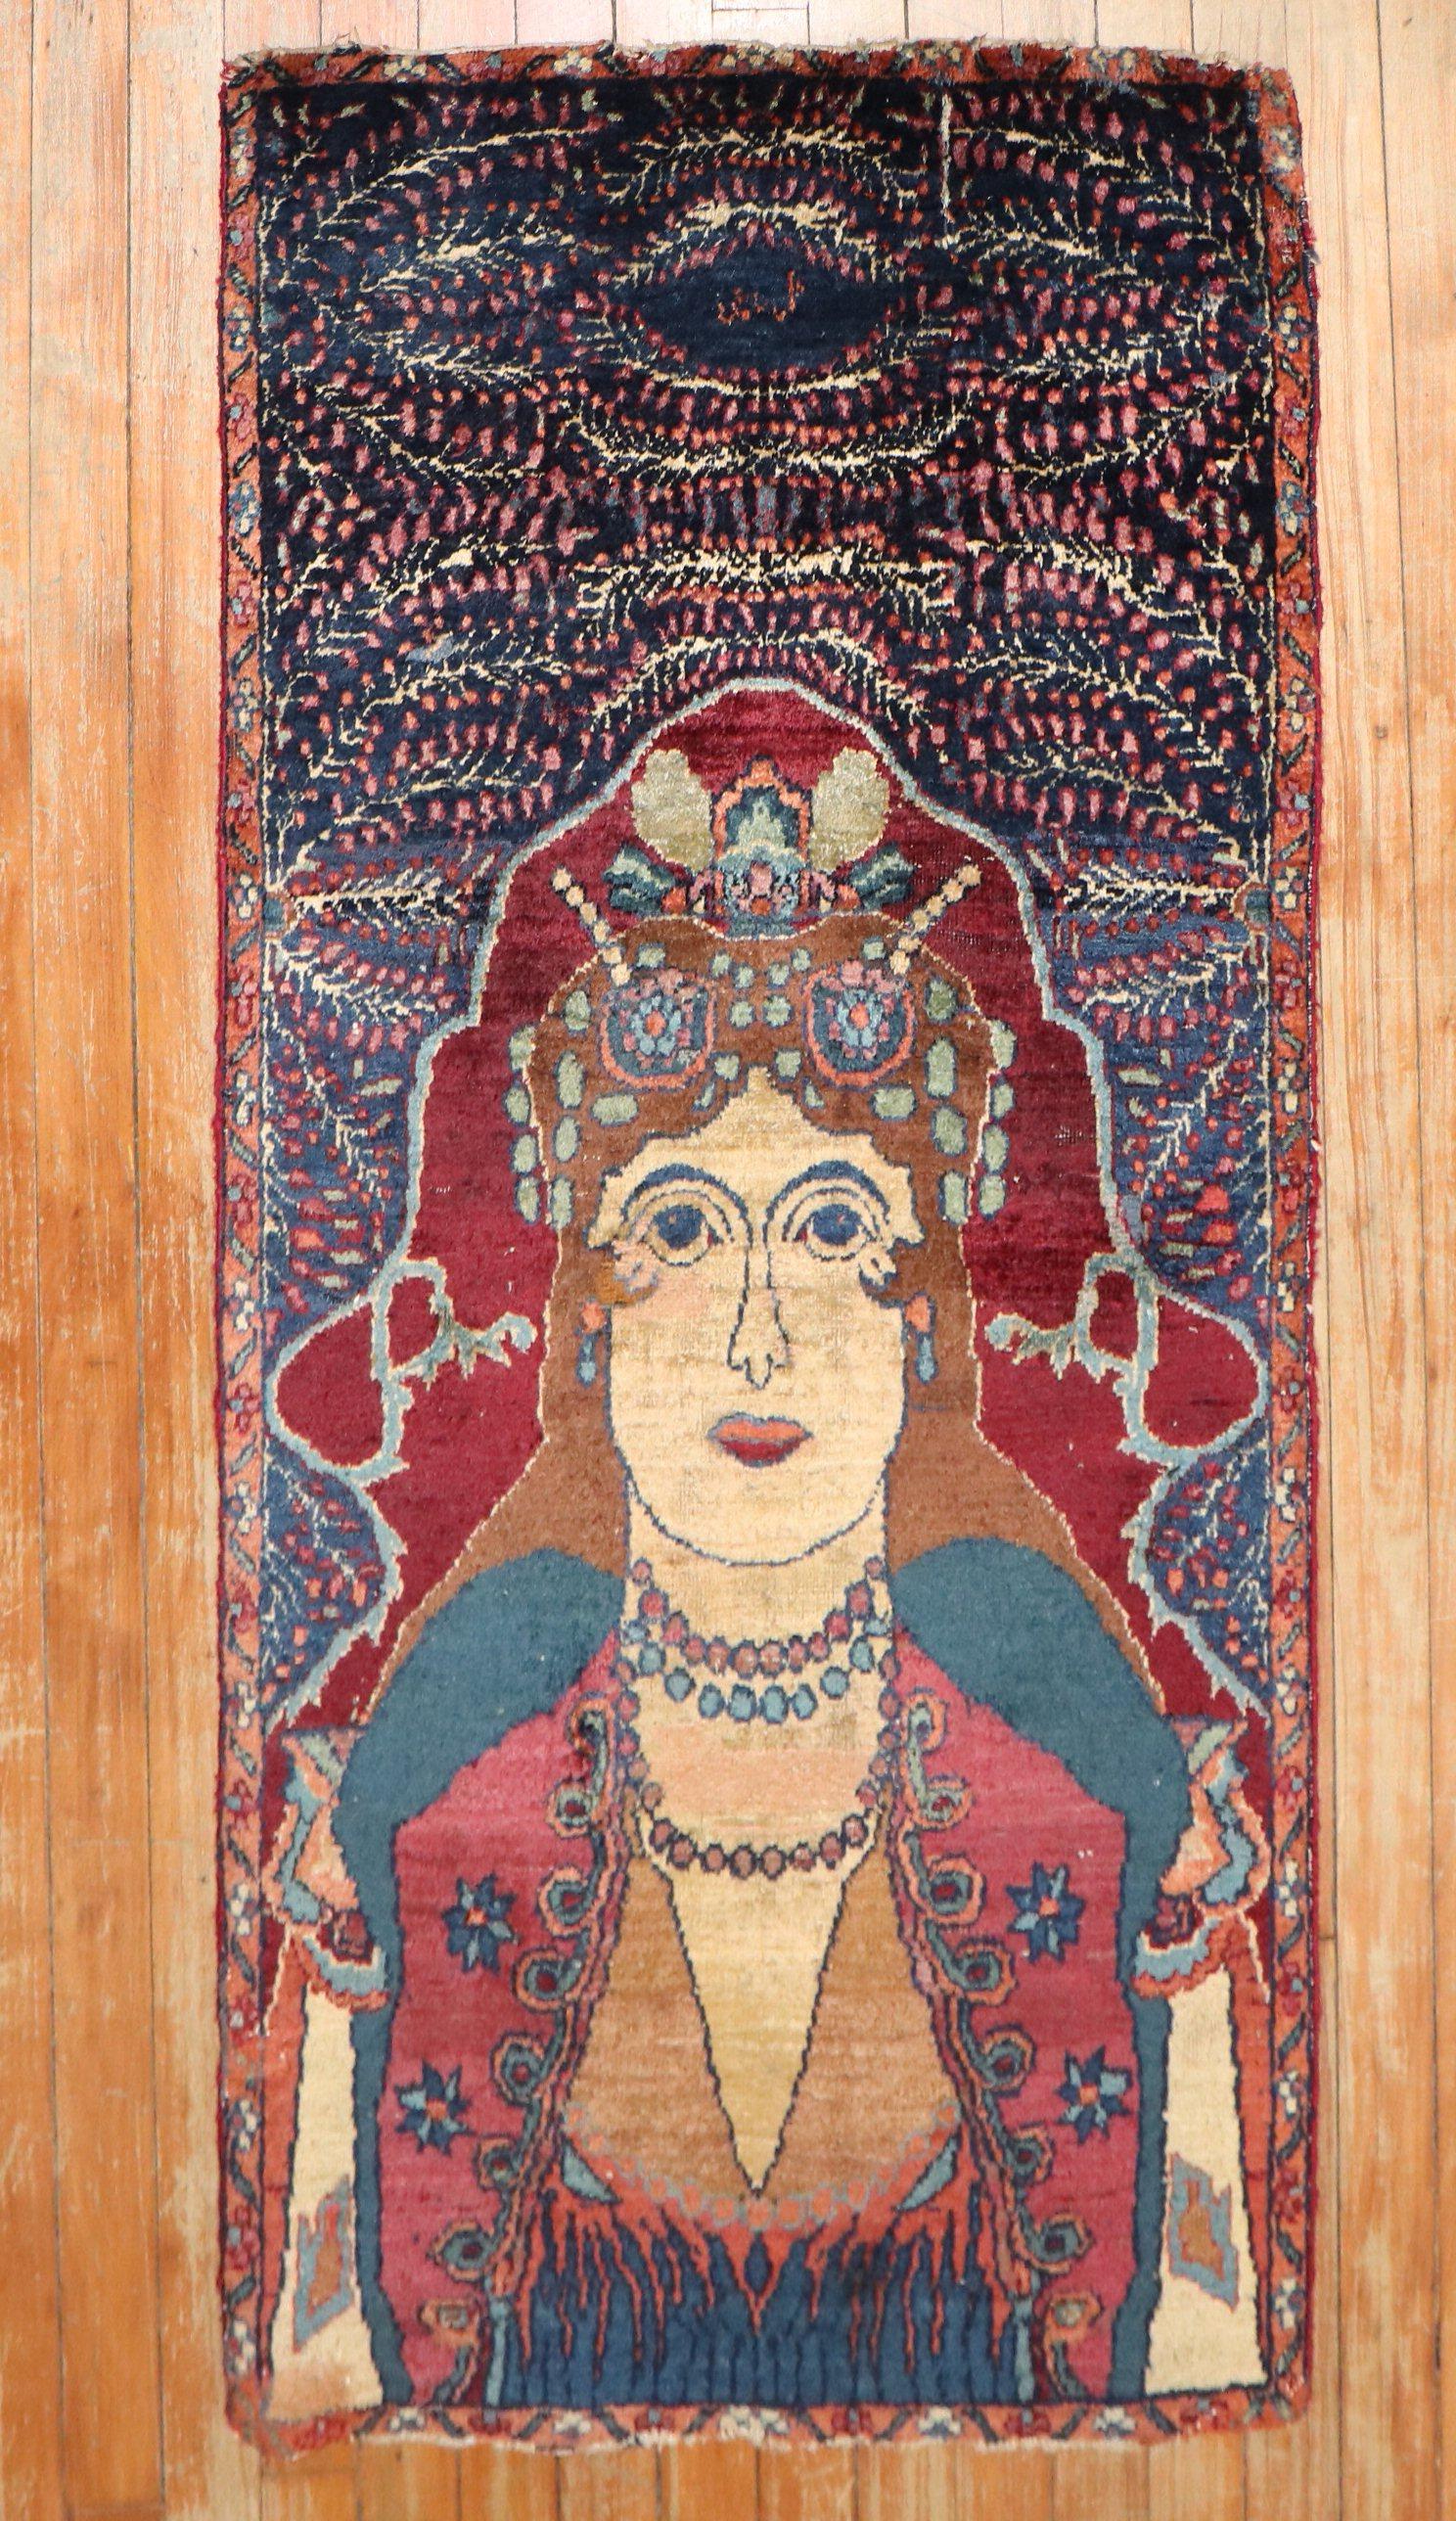 Ein persischer Bildteppich aus dem frühen 20. Jahrhundert, der eine Art Göttin-Königin darzustellen scheint

Maße: 2'1'' x 4'3''